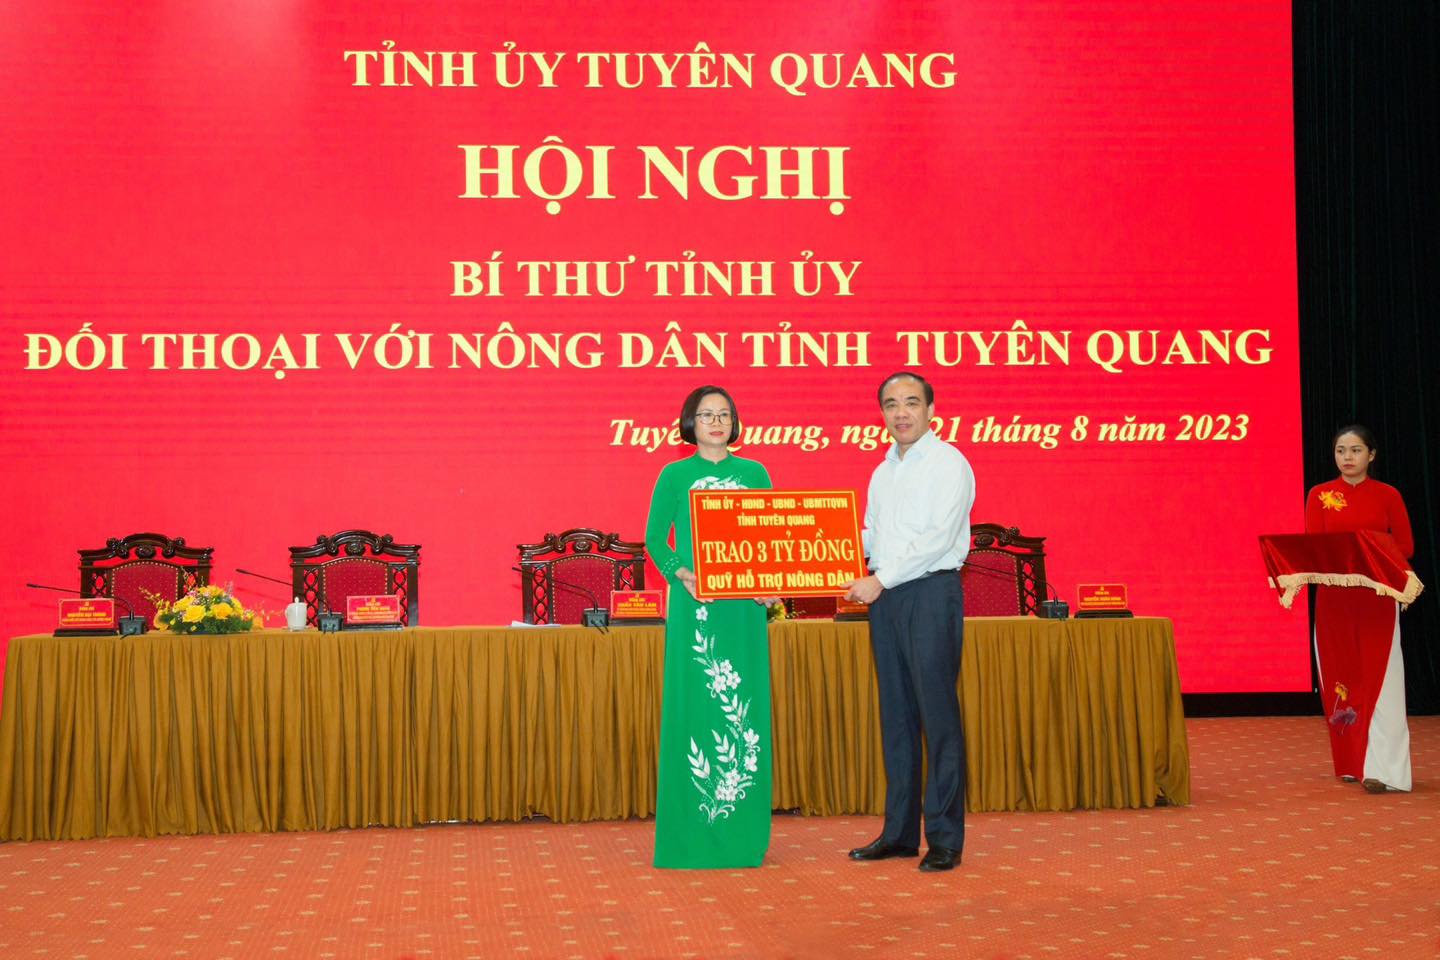 Đối thoại với nông dân, Bí thư Tỉnh ủy Tuyên Quang Chẩu Văn Lâm chỉ đạo hỗ trợ tín dụng cho nông dân  - Ảnh 4.